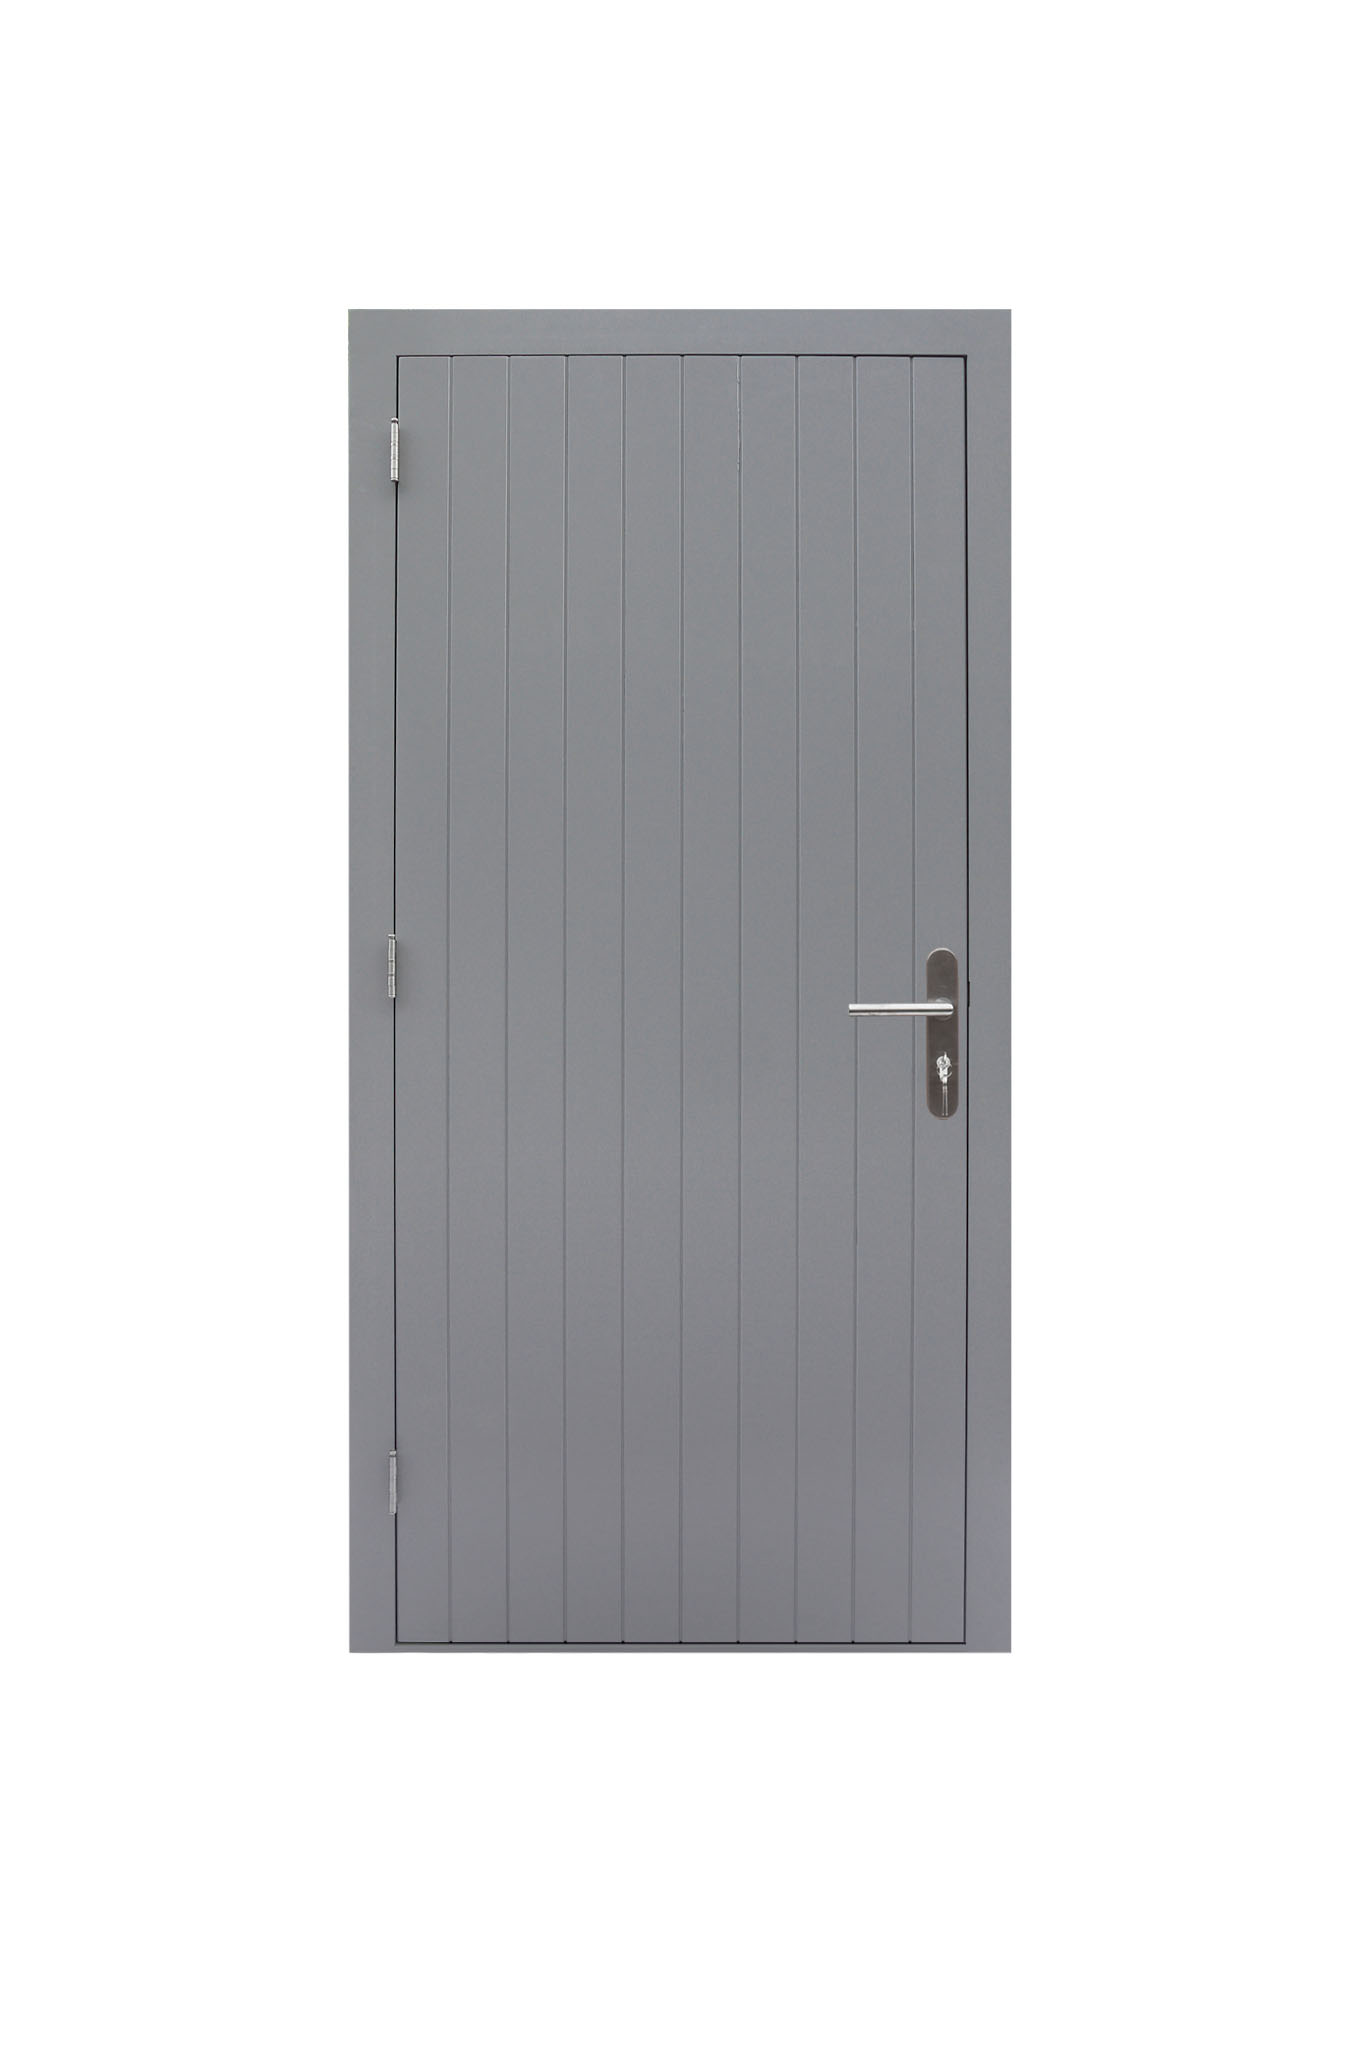 Hardhouten enkele dichte deur Prestige, linksdraaiend, 109 x 221 cm, grijs gegrond